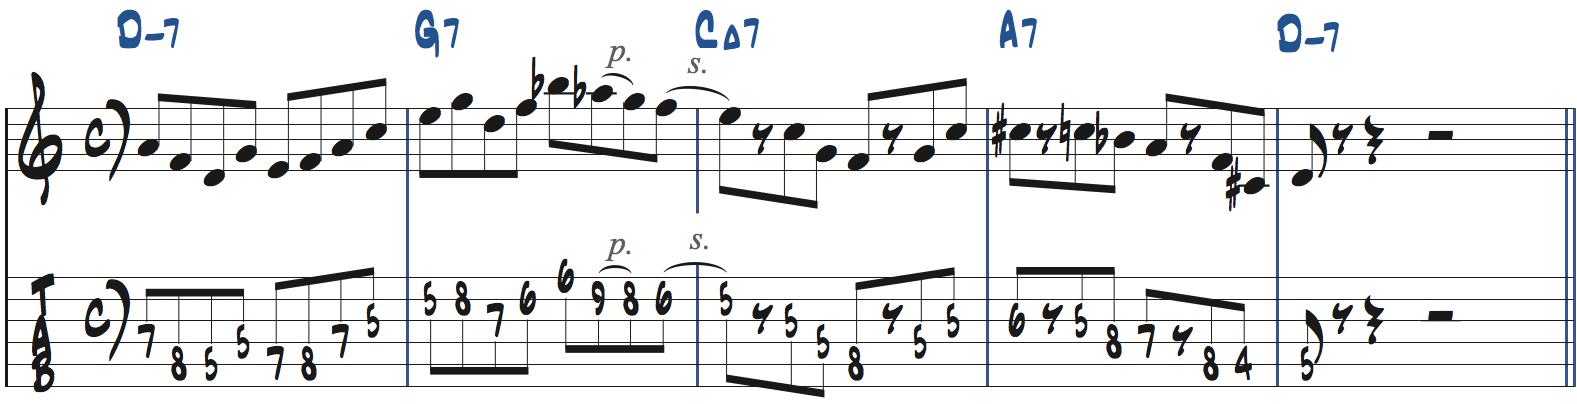 251リックを使った後のフレーズの作り方9楽譜